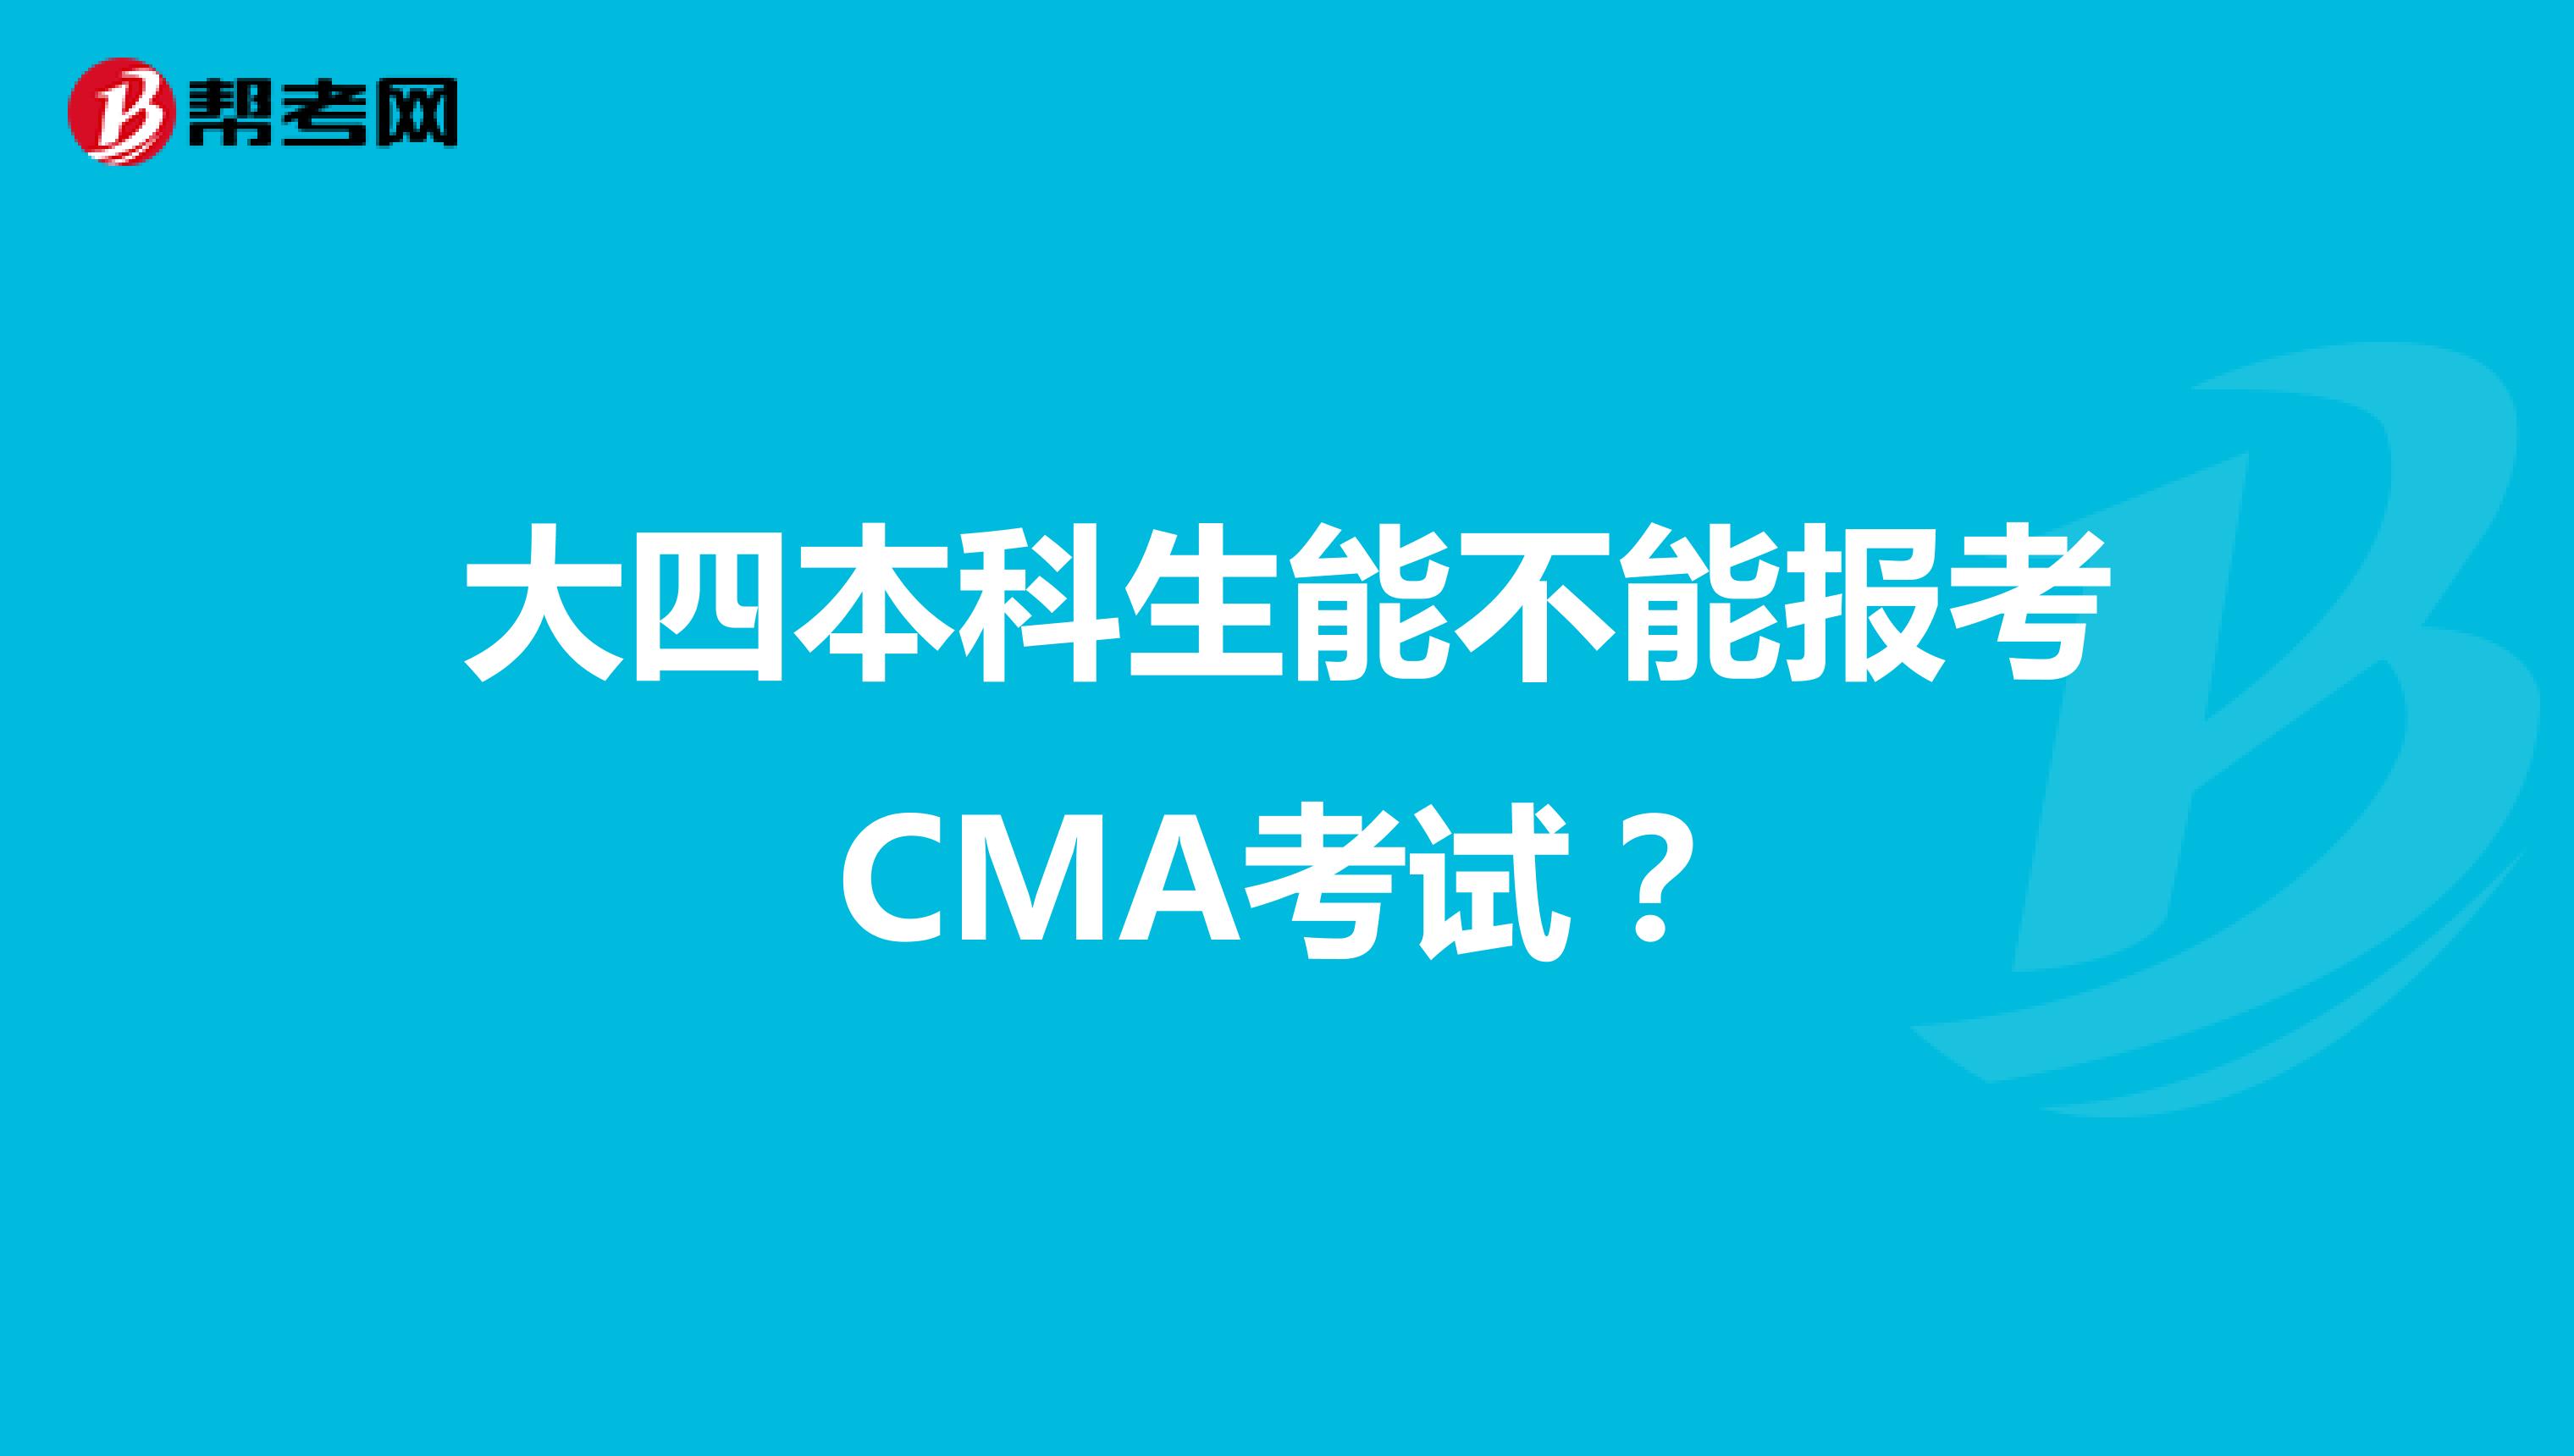 大四本科生能不能报考CMA考试？